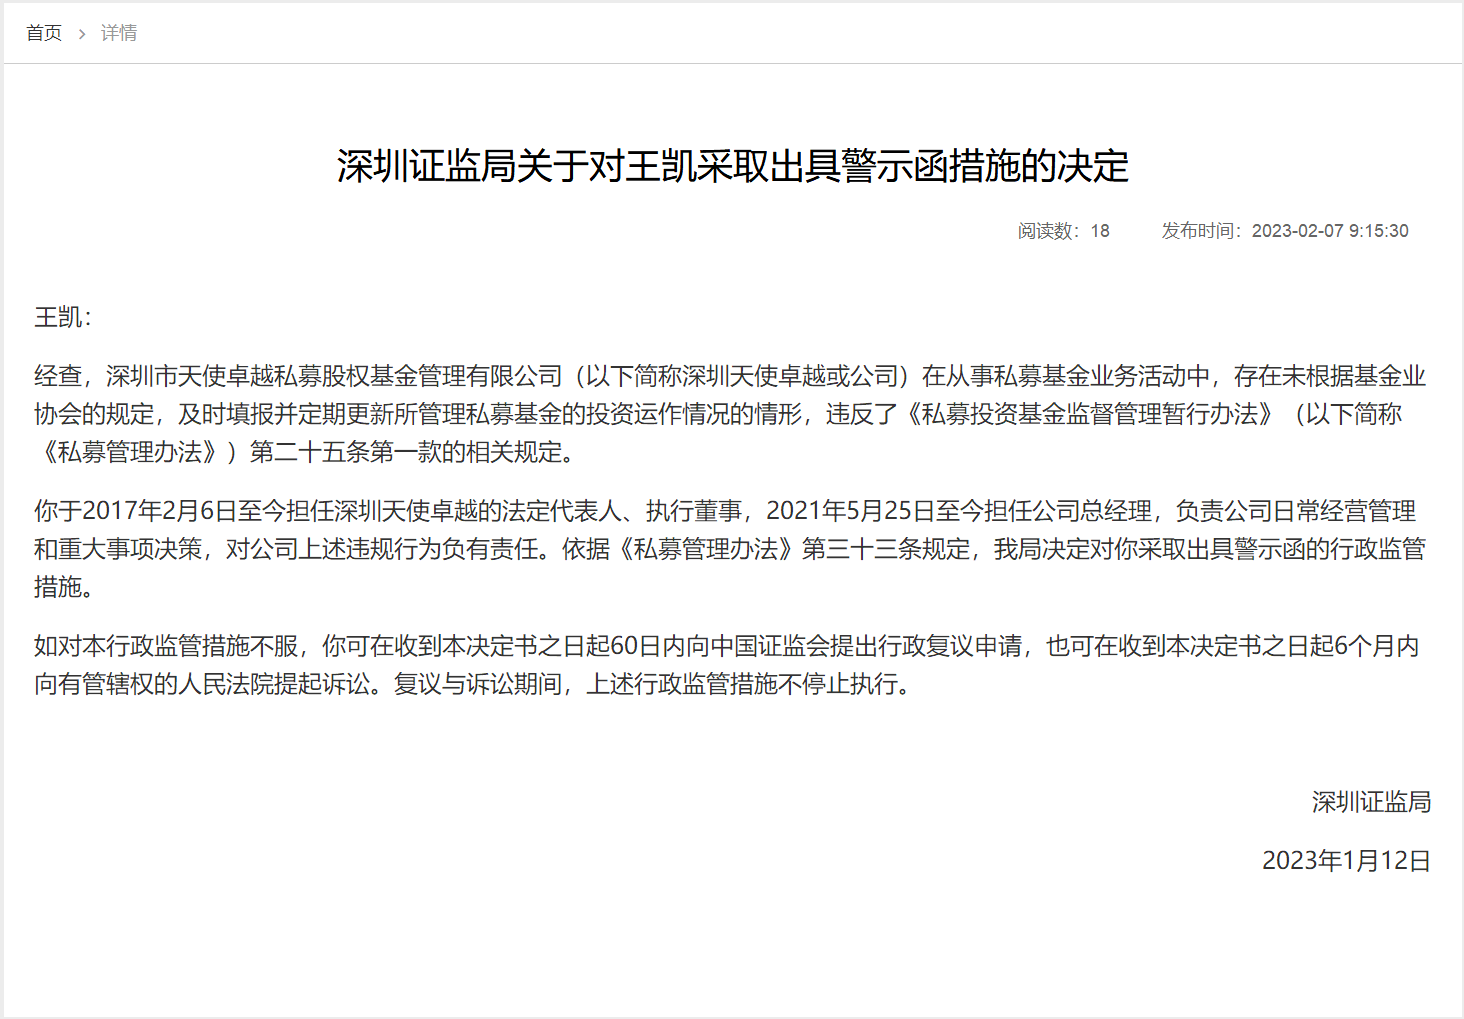 深圳证监局关于对王凯采取出具警示函措施的决定